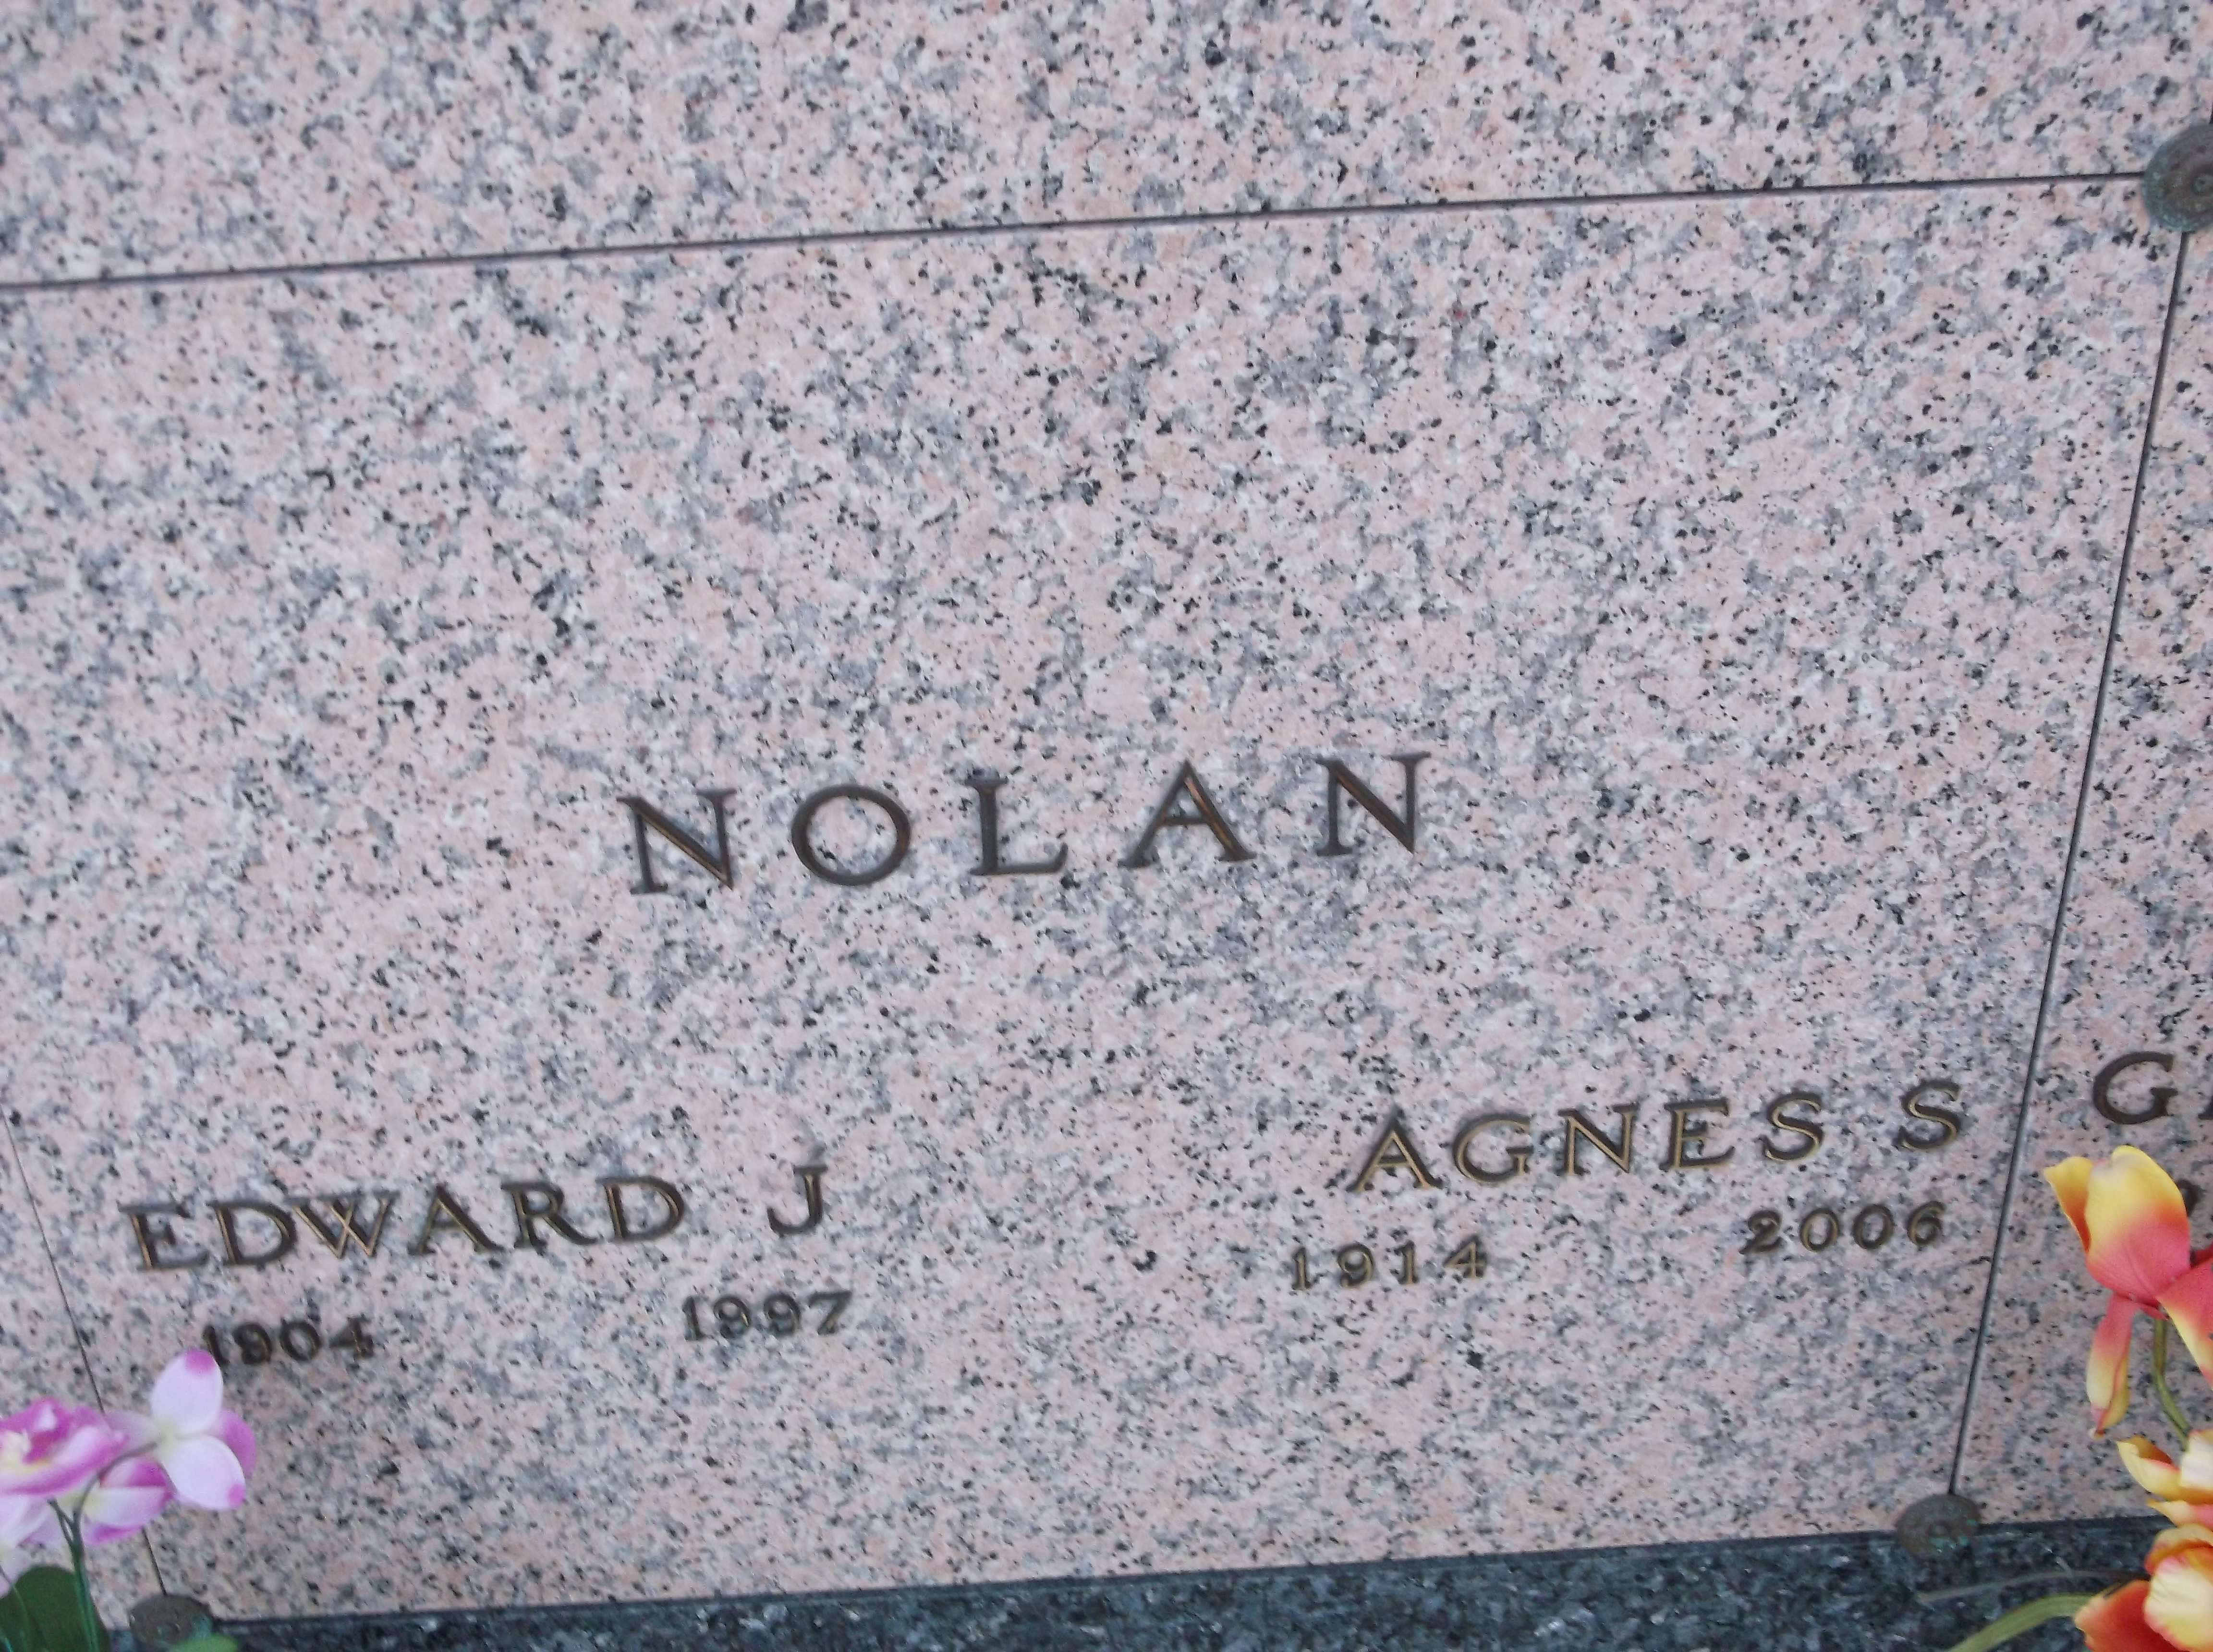 Edward J Nolan